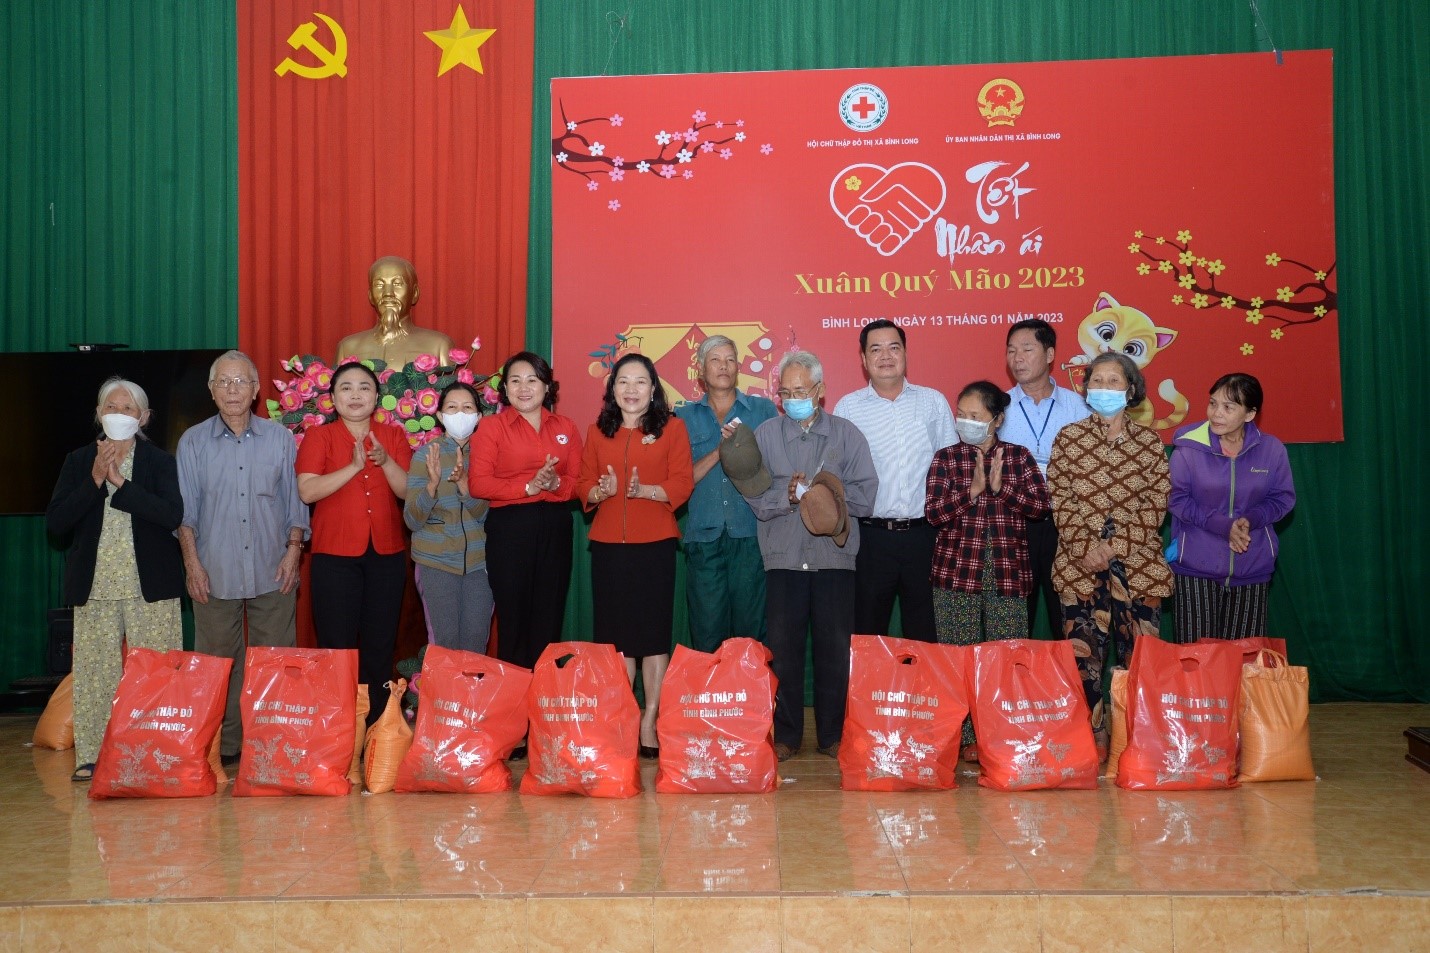 Lãnh đạo Hội Chữ Thập đỏ tỉnh Bình Phước cùng cùng Lãnh đạo Hội Chữ Thập đỏ thị xã Bình Long tặng quà cho các hộ dân có hoàn cảnh khó khăn nhân dịp Tết Nguyên đán Quý Mão – 2023.